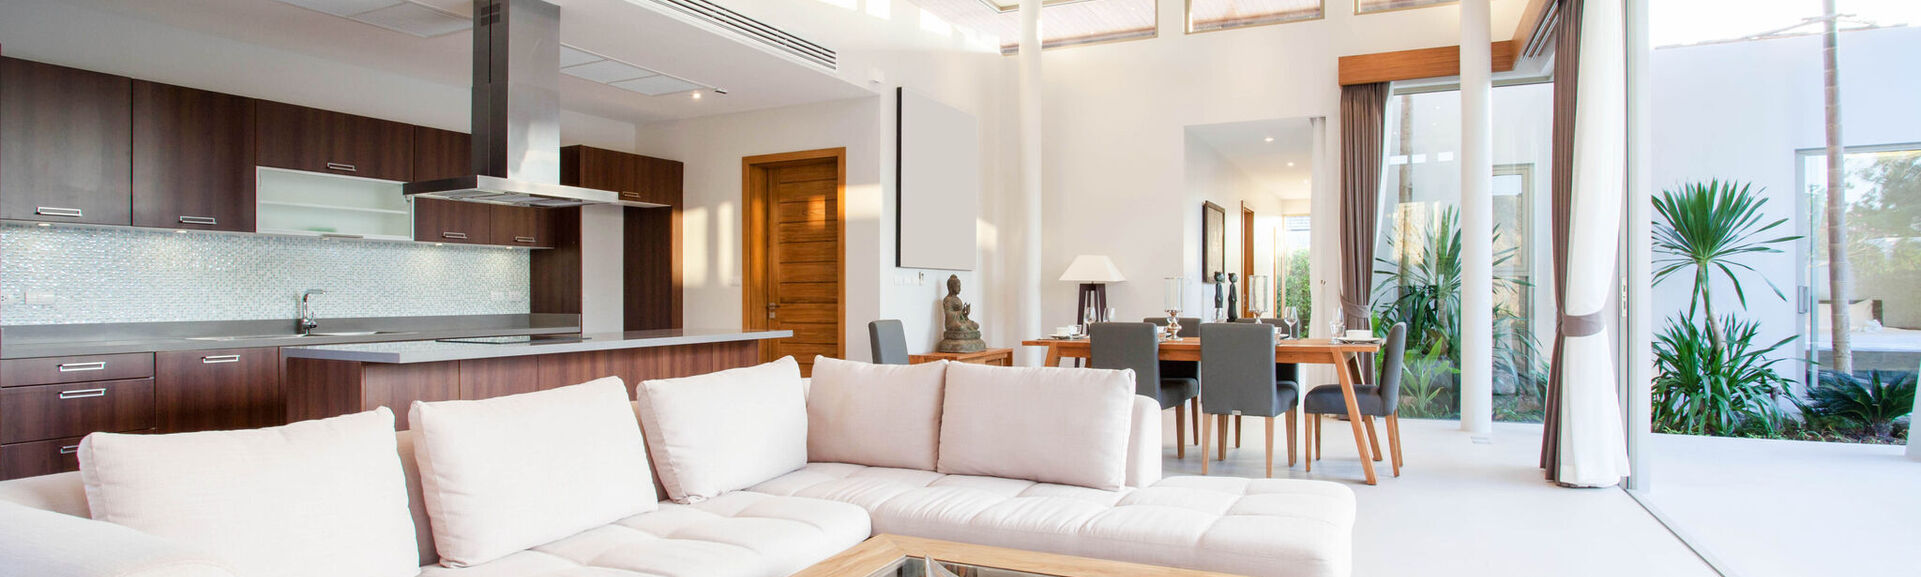 Luxury interior design in living room